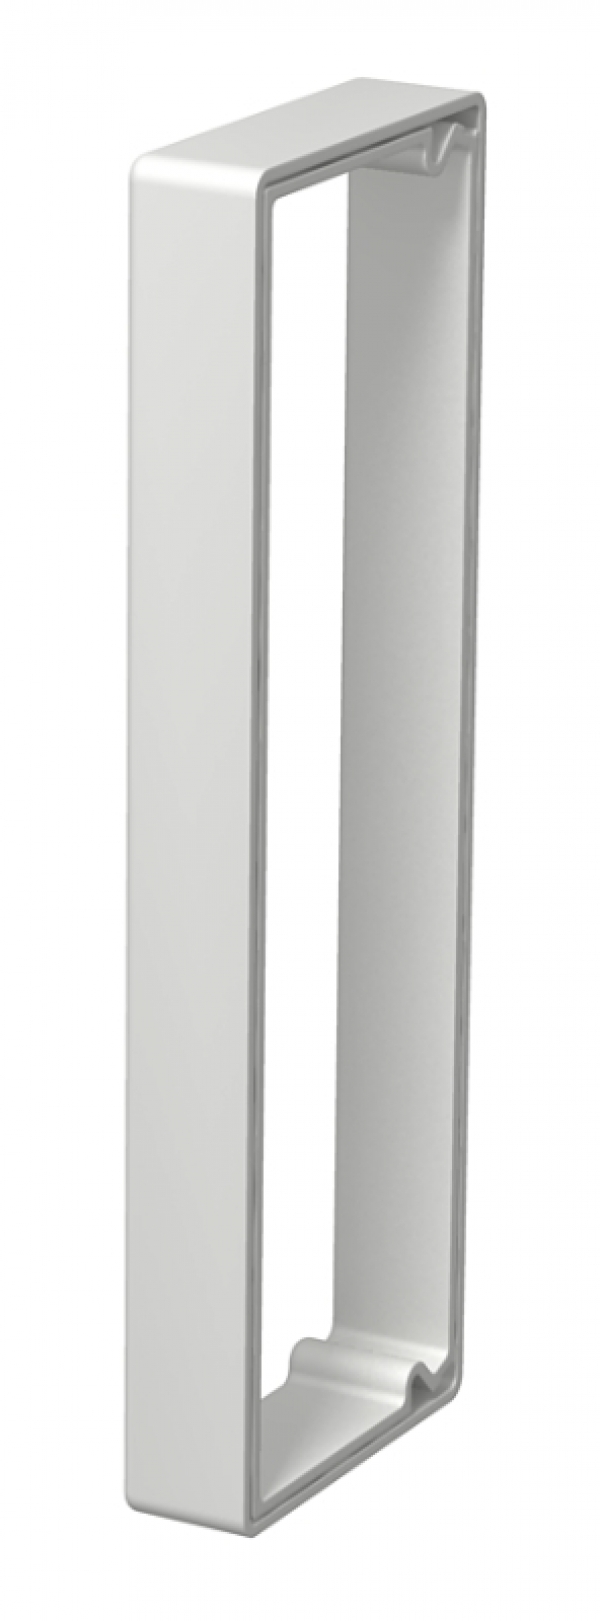 6249856 - OBO BETTERMANN Кольцо для защиты кромок LKM 60x200 мм (серый) (KSR60200).